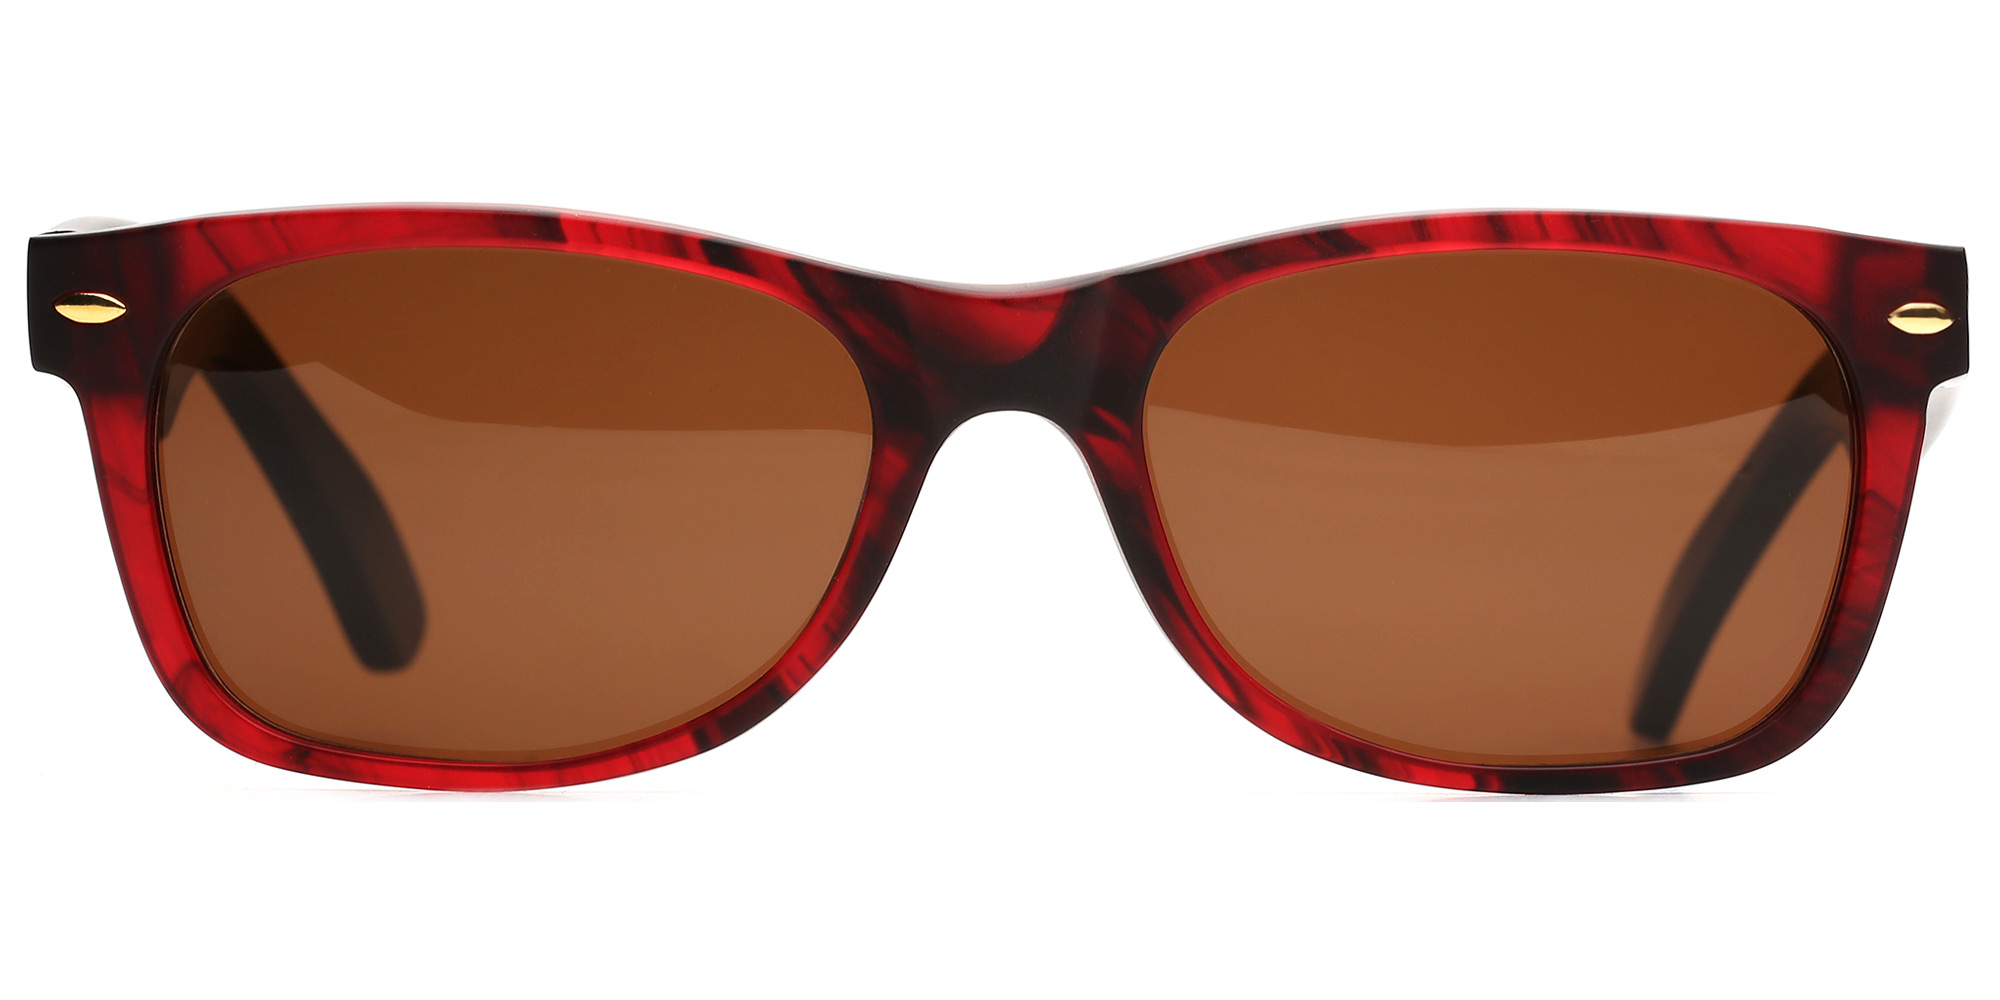 Солнцезащитные очки женские Brillenhof SUN K3211 коричневые/красные